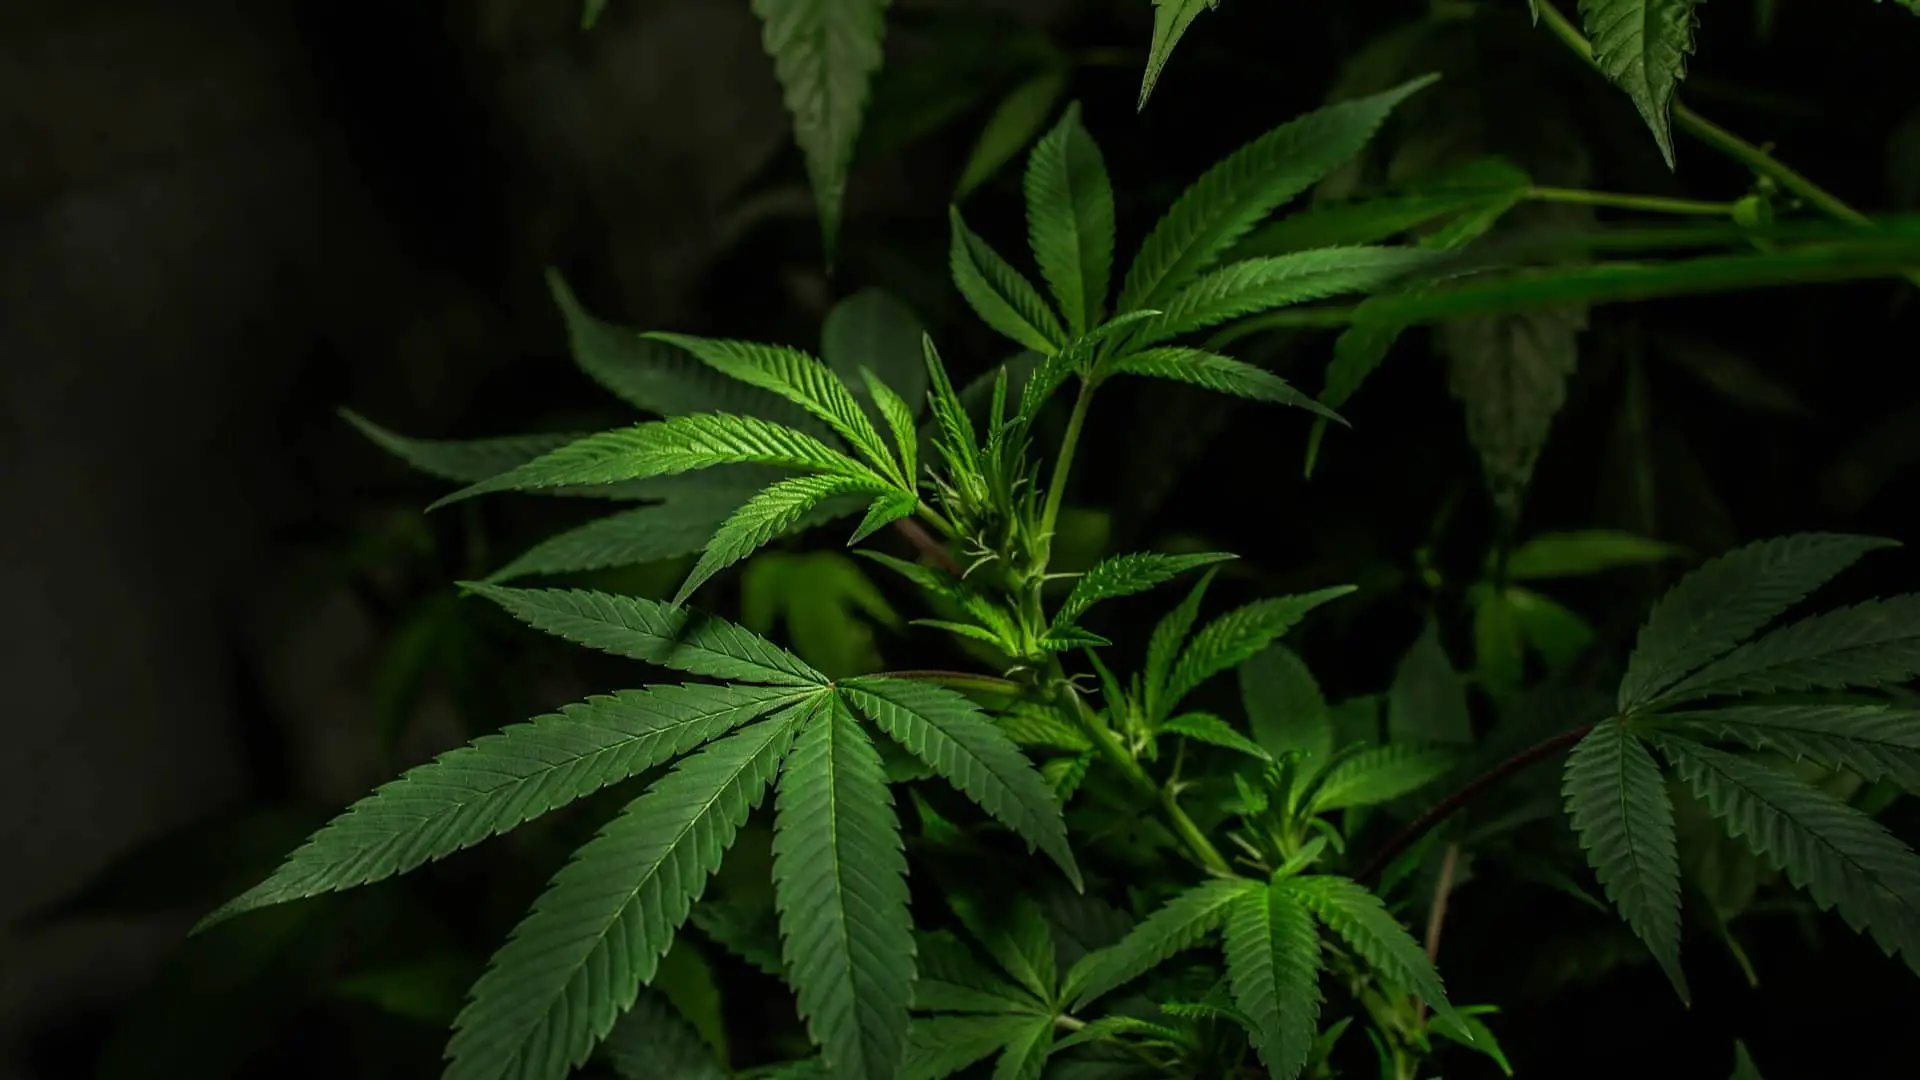 Faire pousser de la marijuana dans son jardin devient légale en Thaïlande